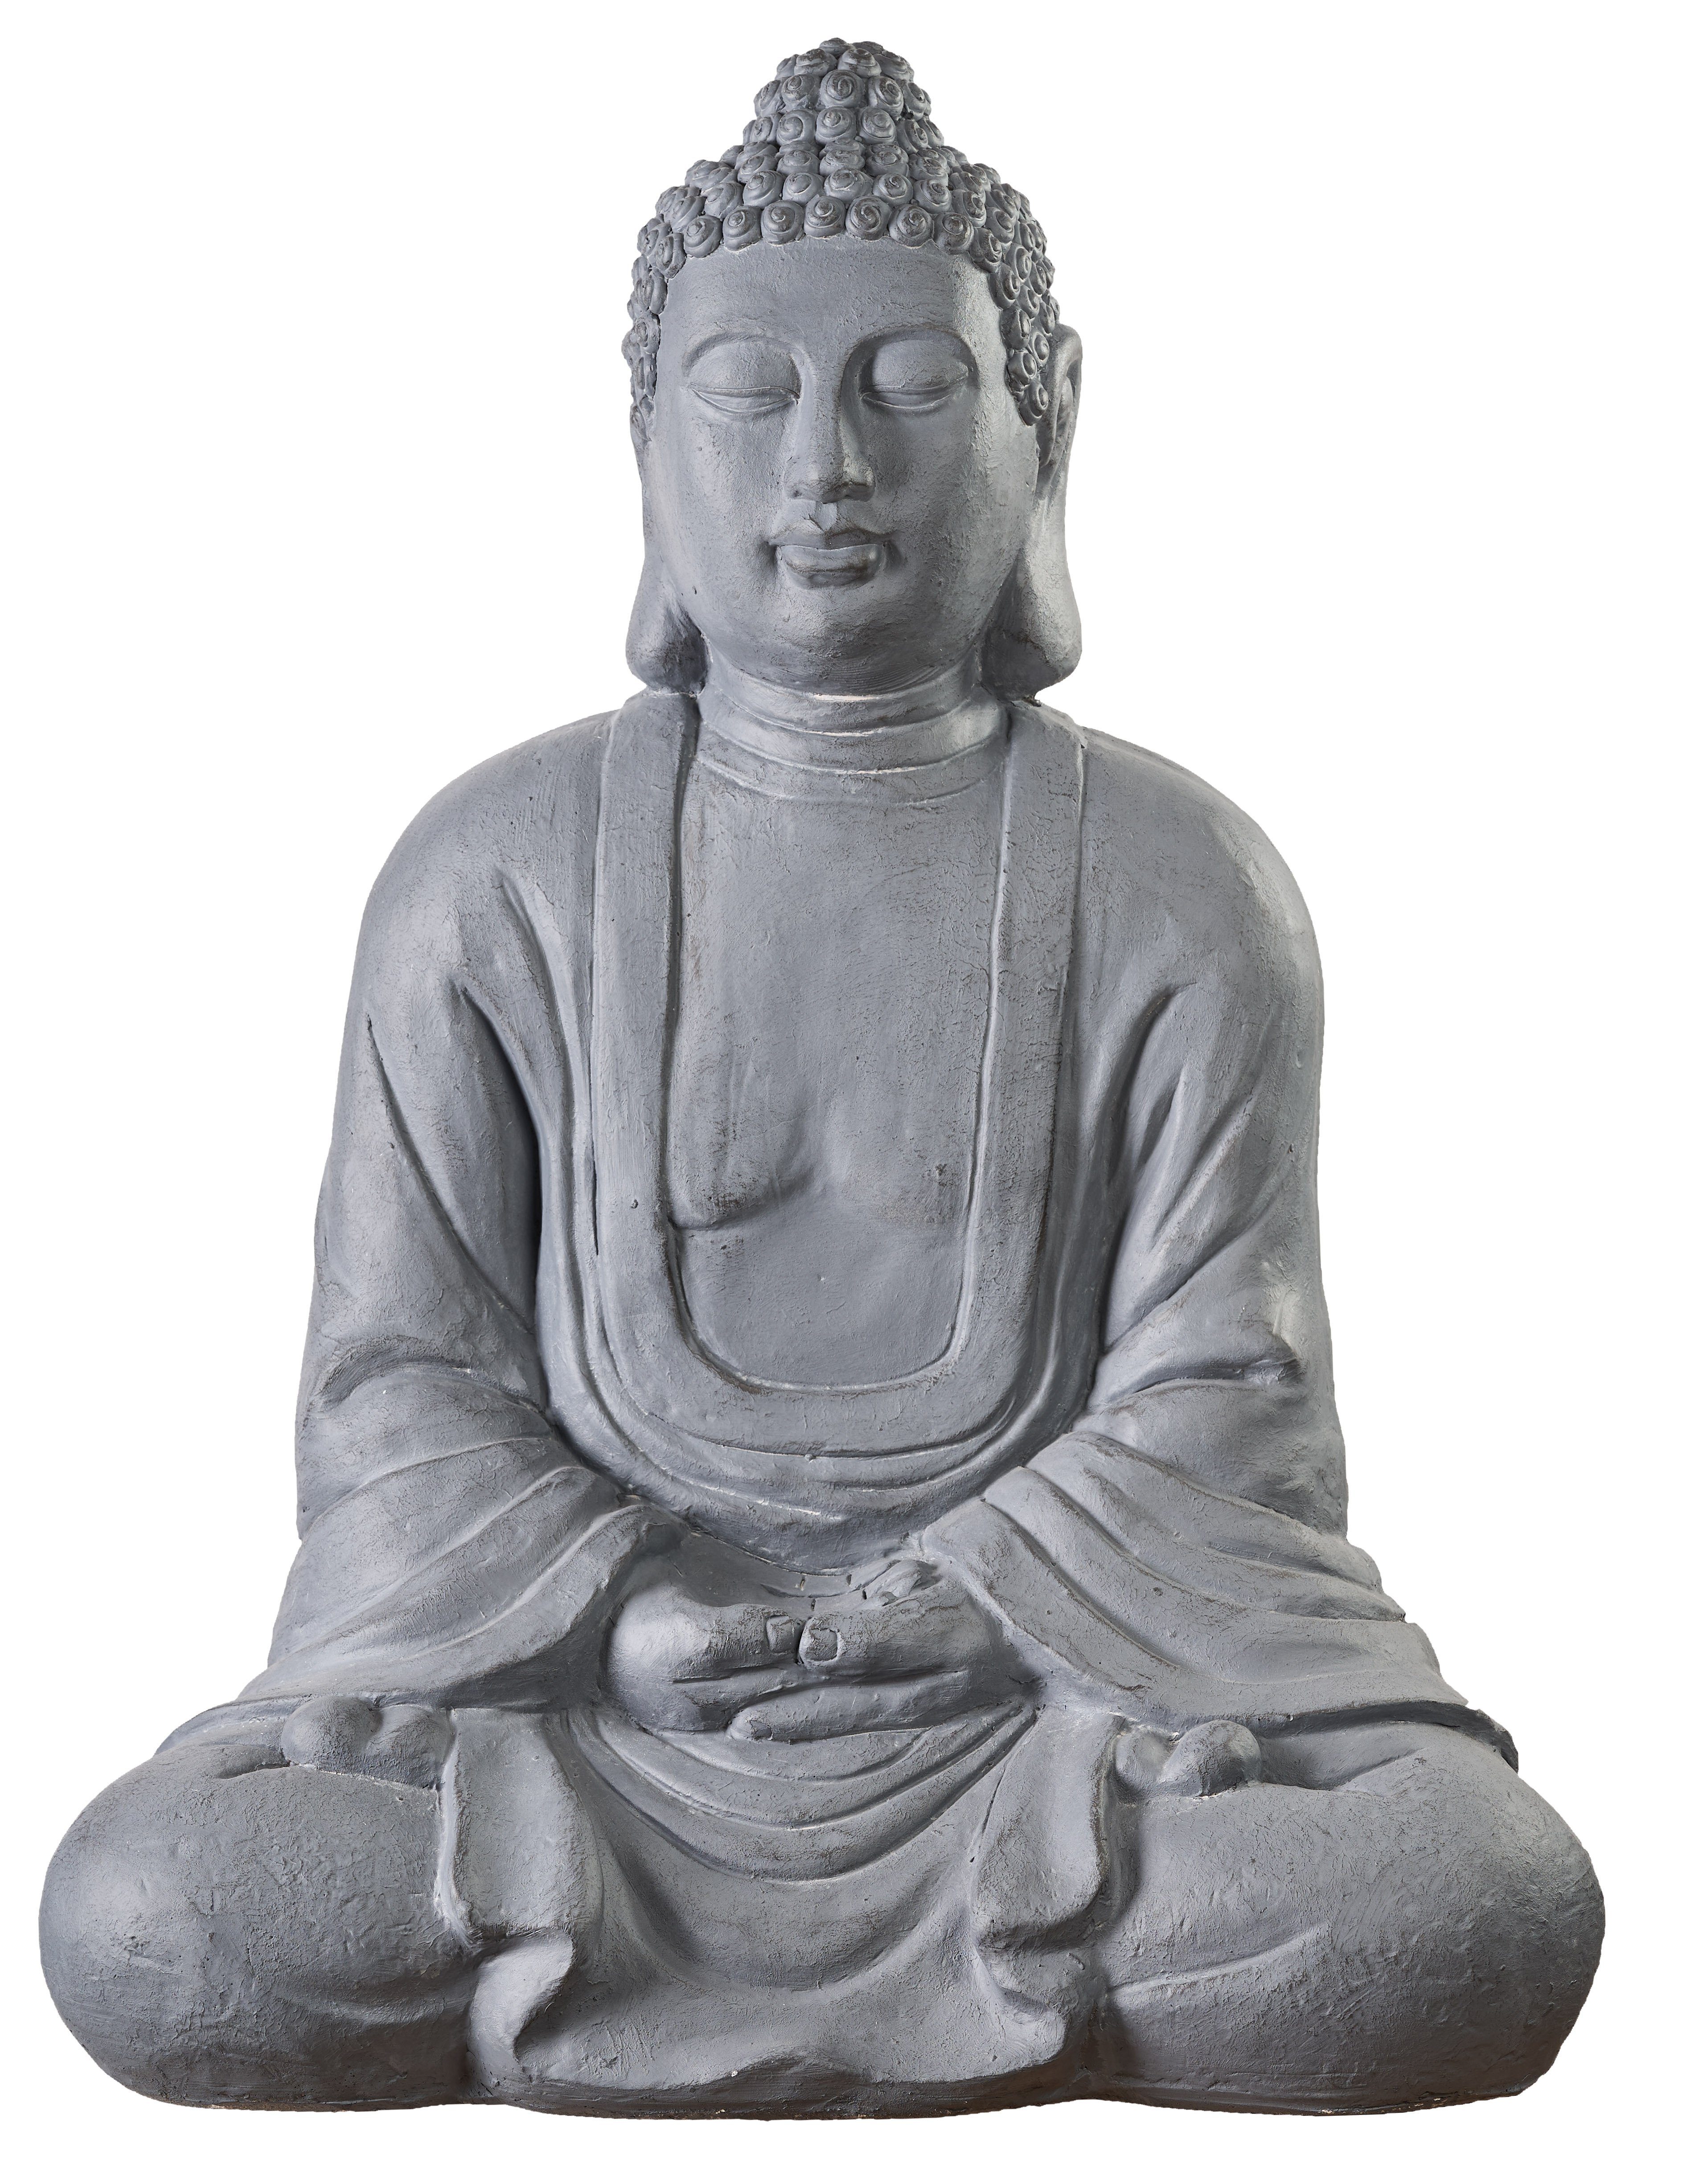 NEUSTEIN Garten Skulptur 80 cm grau XXXL Großer Buddhafigur sitzend Figur Steinoptik Shui Feng Buddha Deko